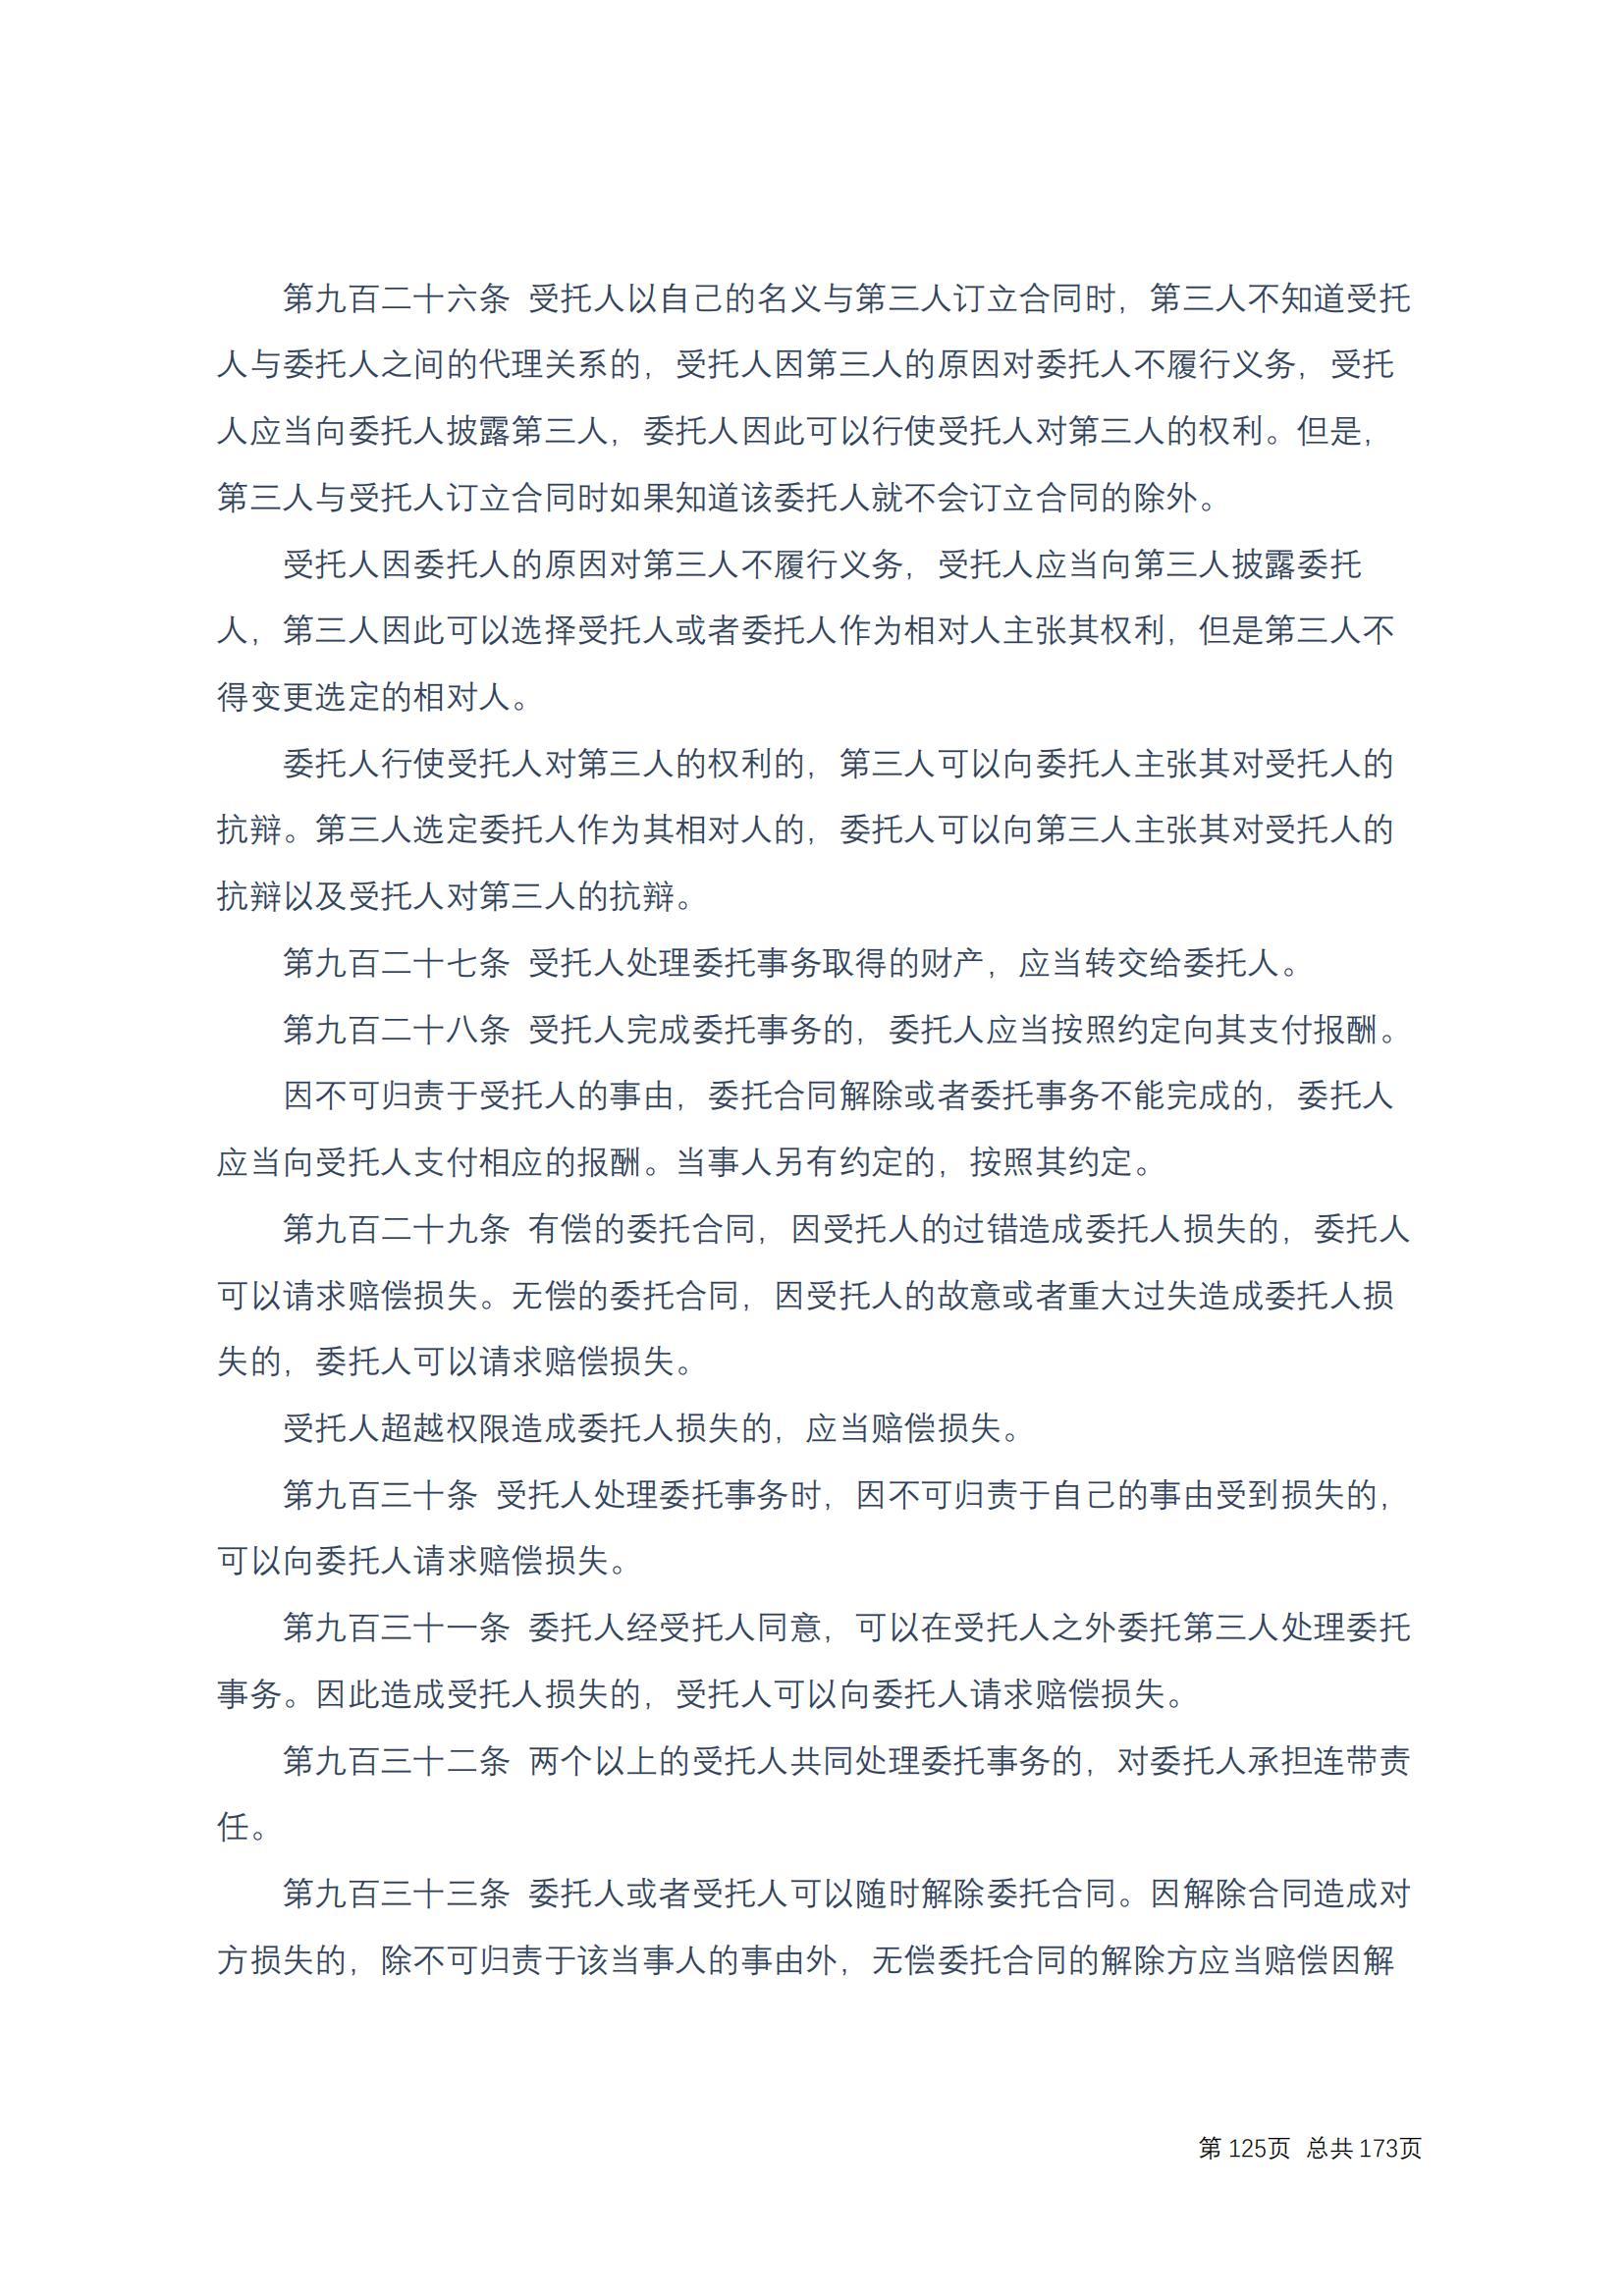 中华人民共和国民法典 修改过_124